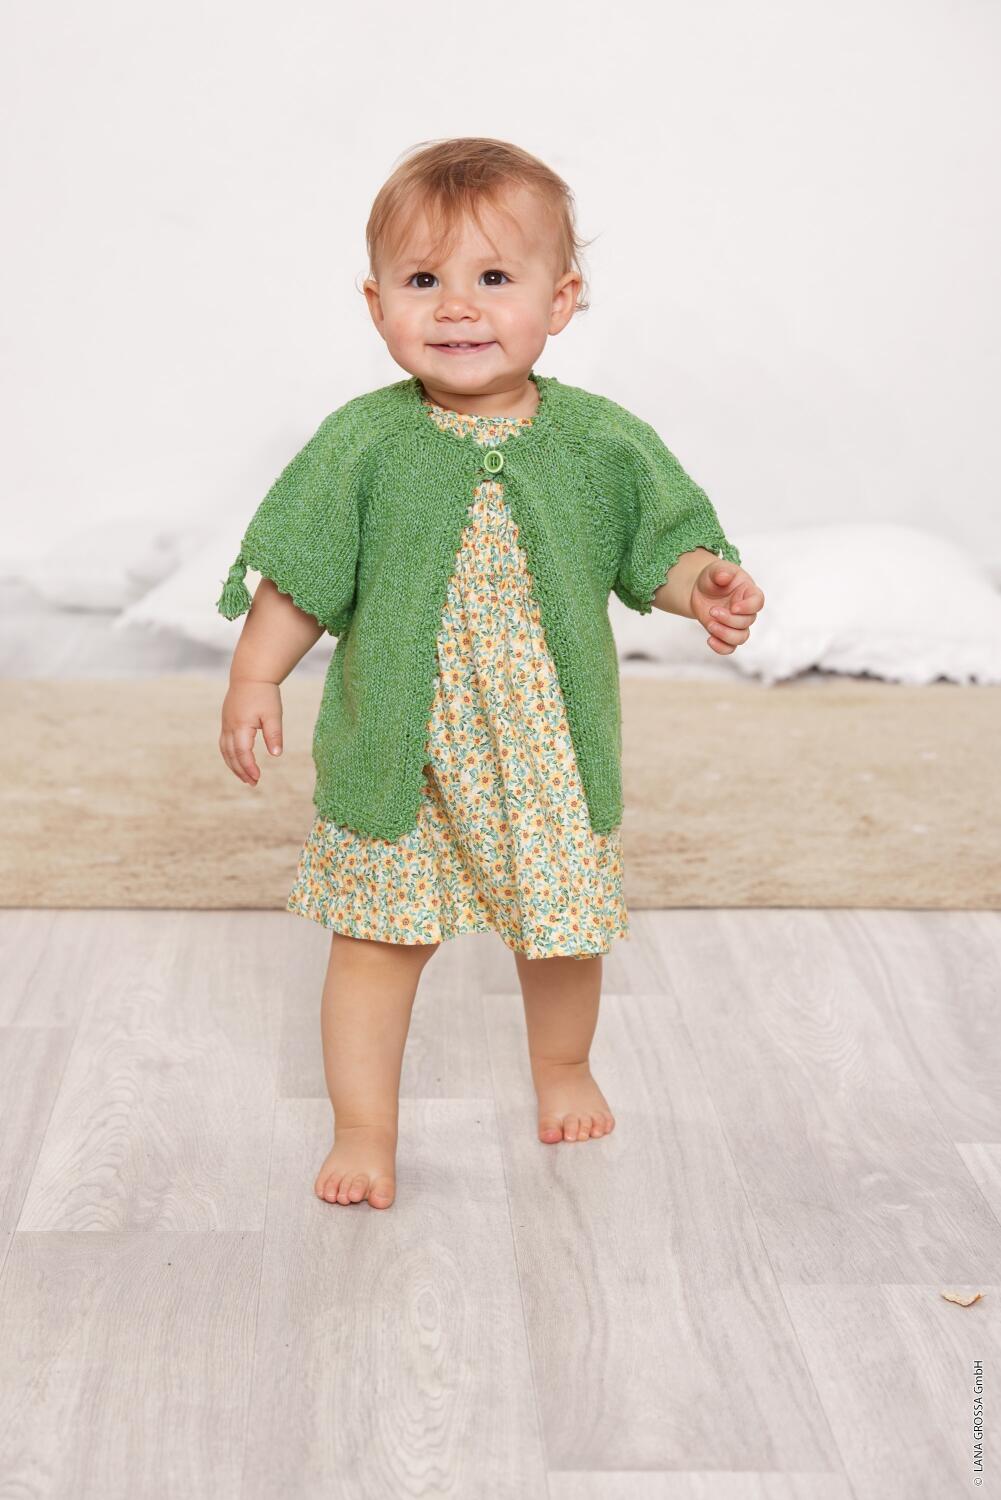 Lana Grossa Infanti 19 - Zauberhafte Babymode Modell 11 Jacke aus Landlust Sommerseide